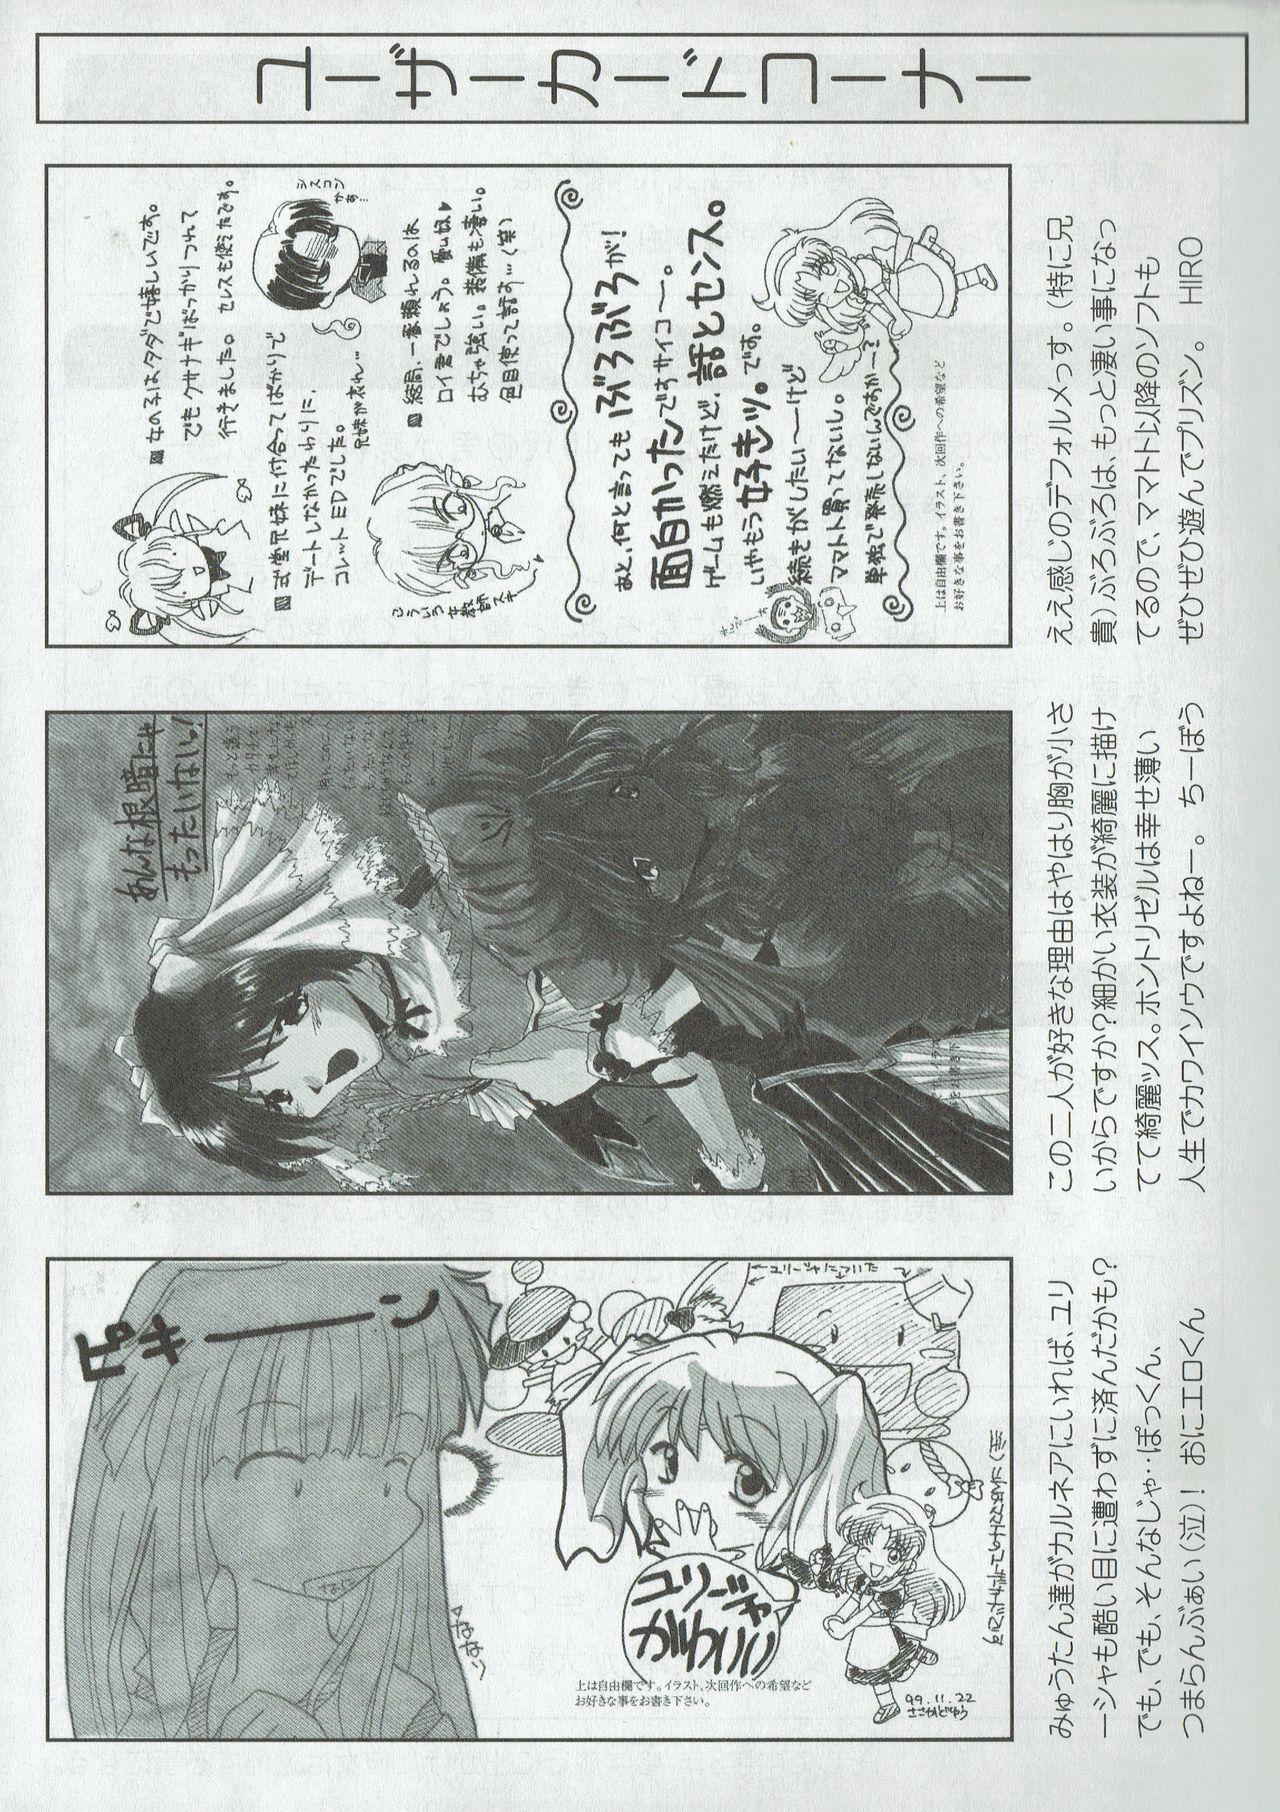 Arisu no Denchi Bakudan Vol. 09 21